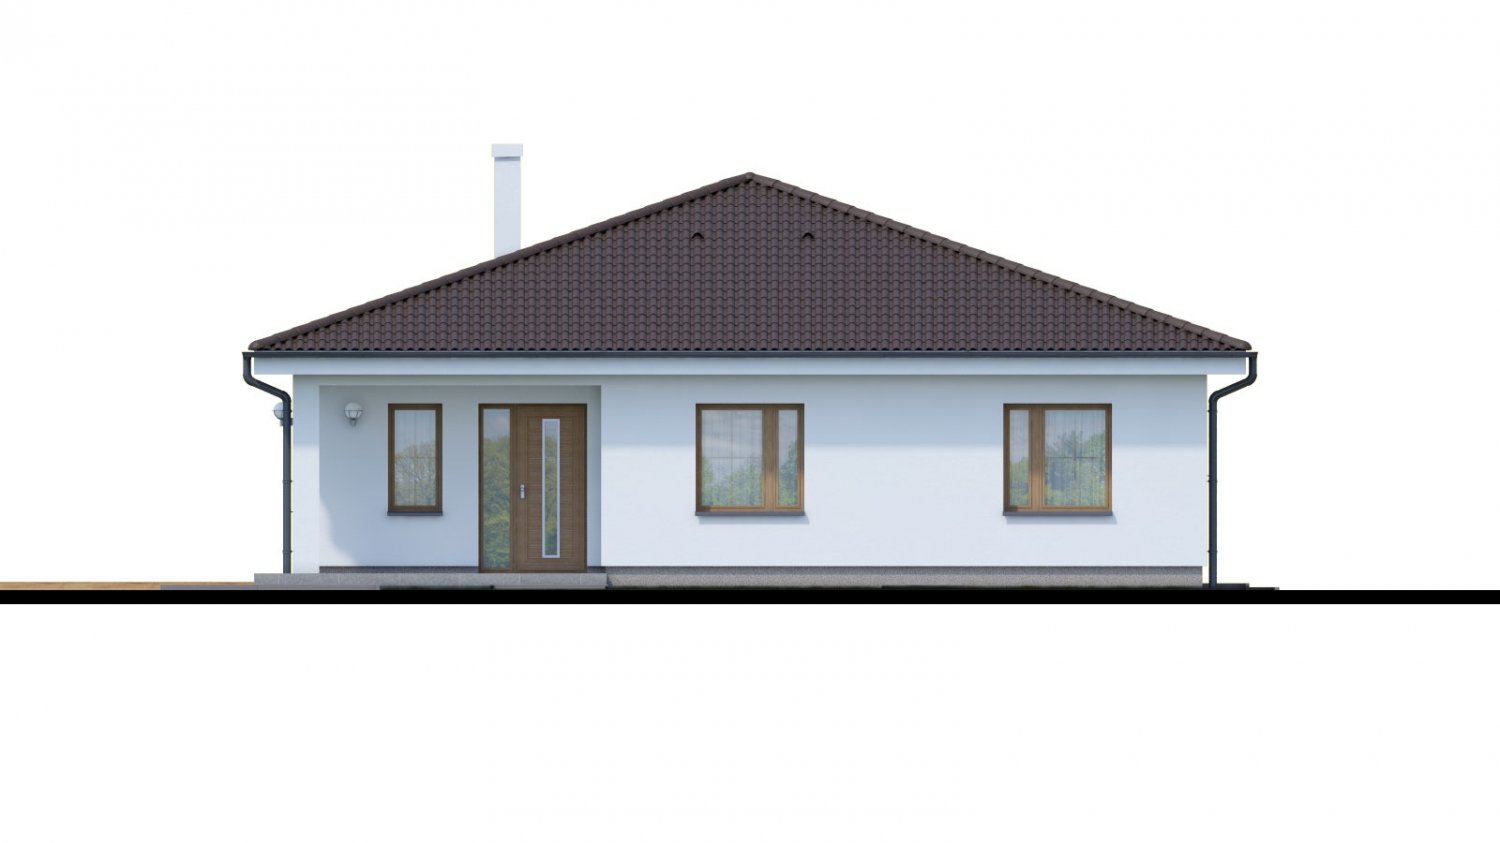 Zrkadlový pohľad 1. - Jednoduchý 5-pokojový rodinný dům s valbovou střechou. Zpracovaný i ve virtuální realitě 3d.